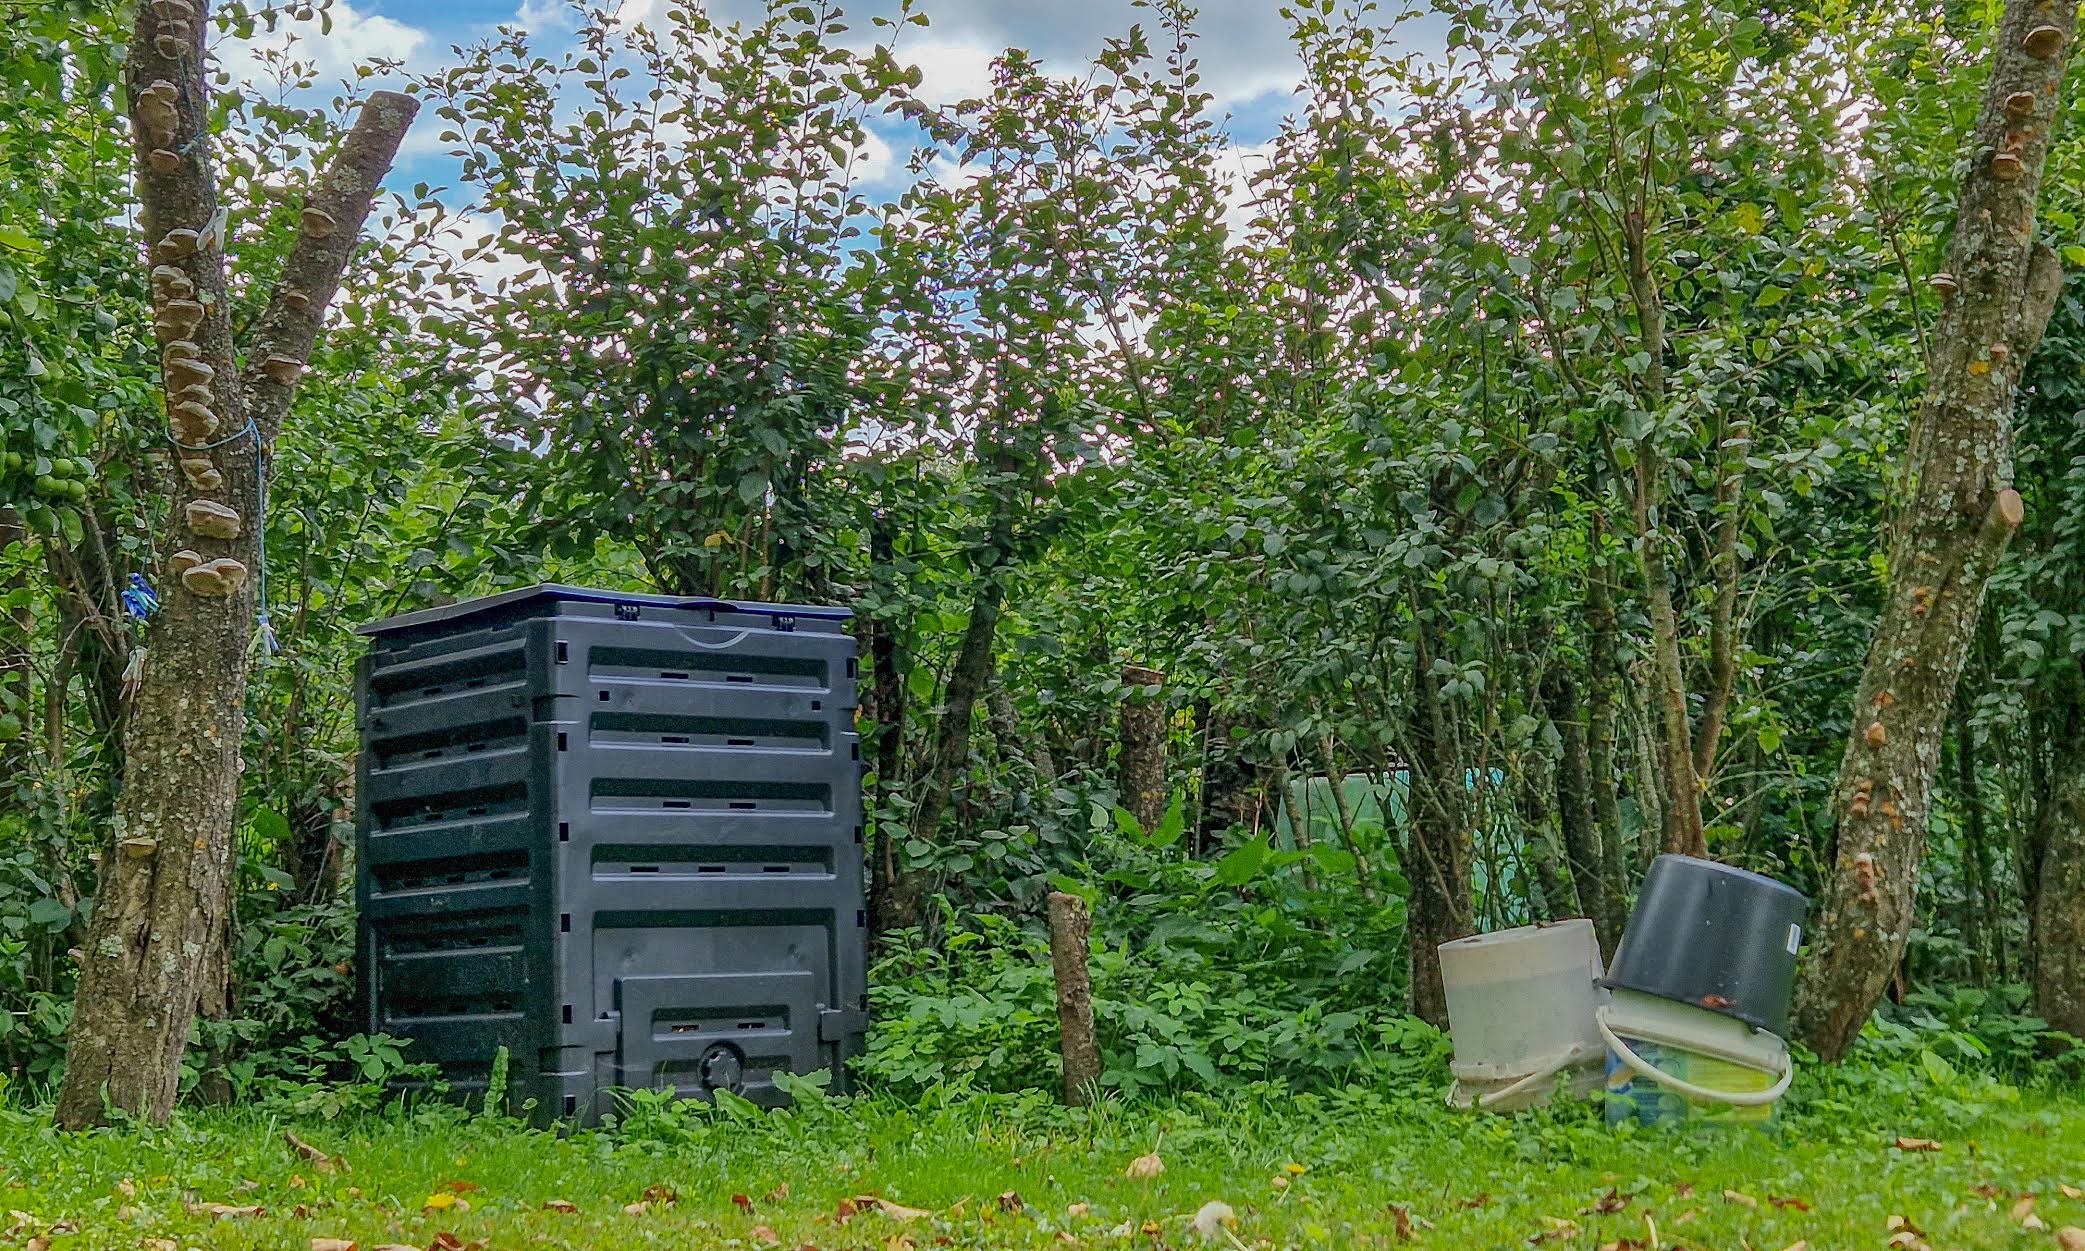 Võru linna elanikud saavad alates septembrist valida oma kinnistul kinnises kompostris kompostimise ja biojäätmete vedajale üleandmise vahel. Fotod: AIGAR NAGEL